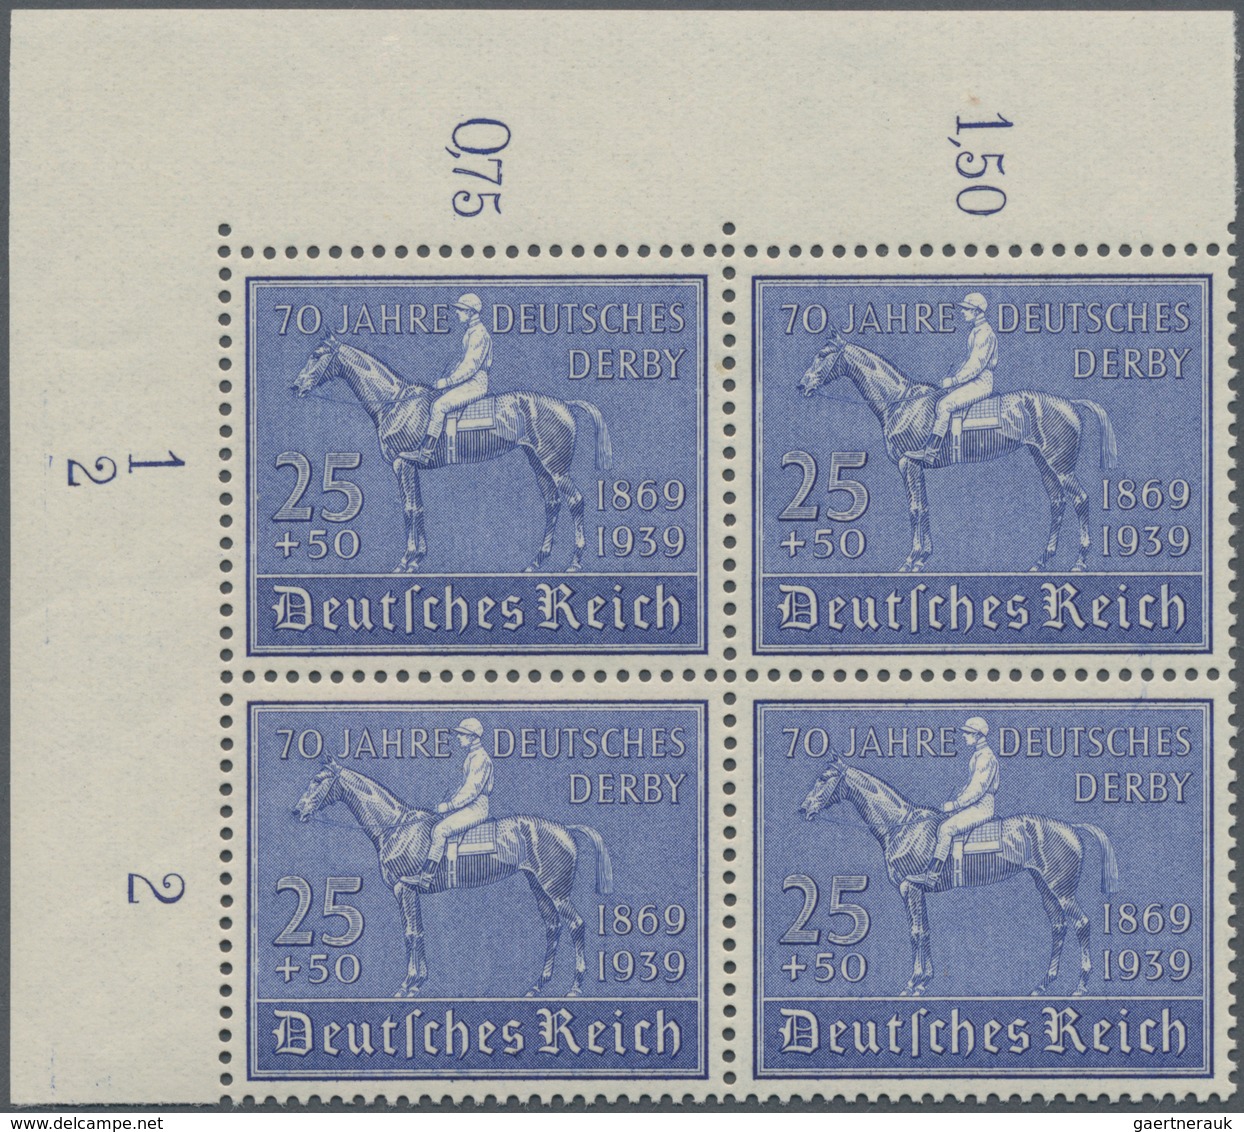 Deutsches Reich - 3. Reich: 1939, 25+50 Pf 70. Jahre Deutsches Derby, Postfrische Bogenecke Links Ob - Covers & Documents